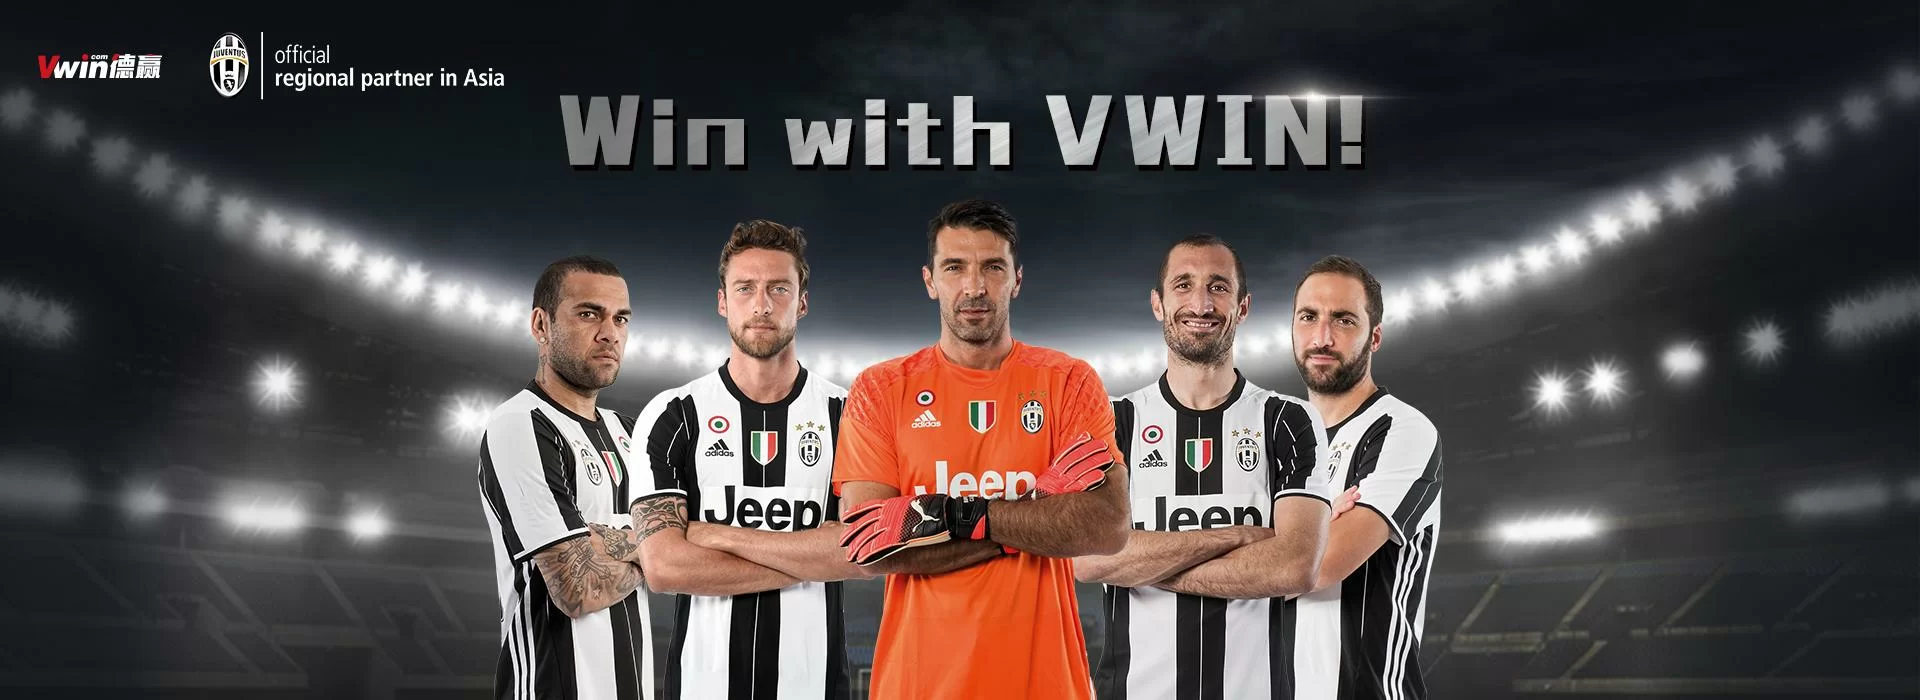 Vwin nuovo regional partner di Juventus in Asia